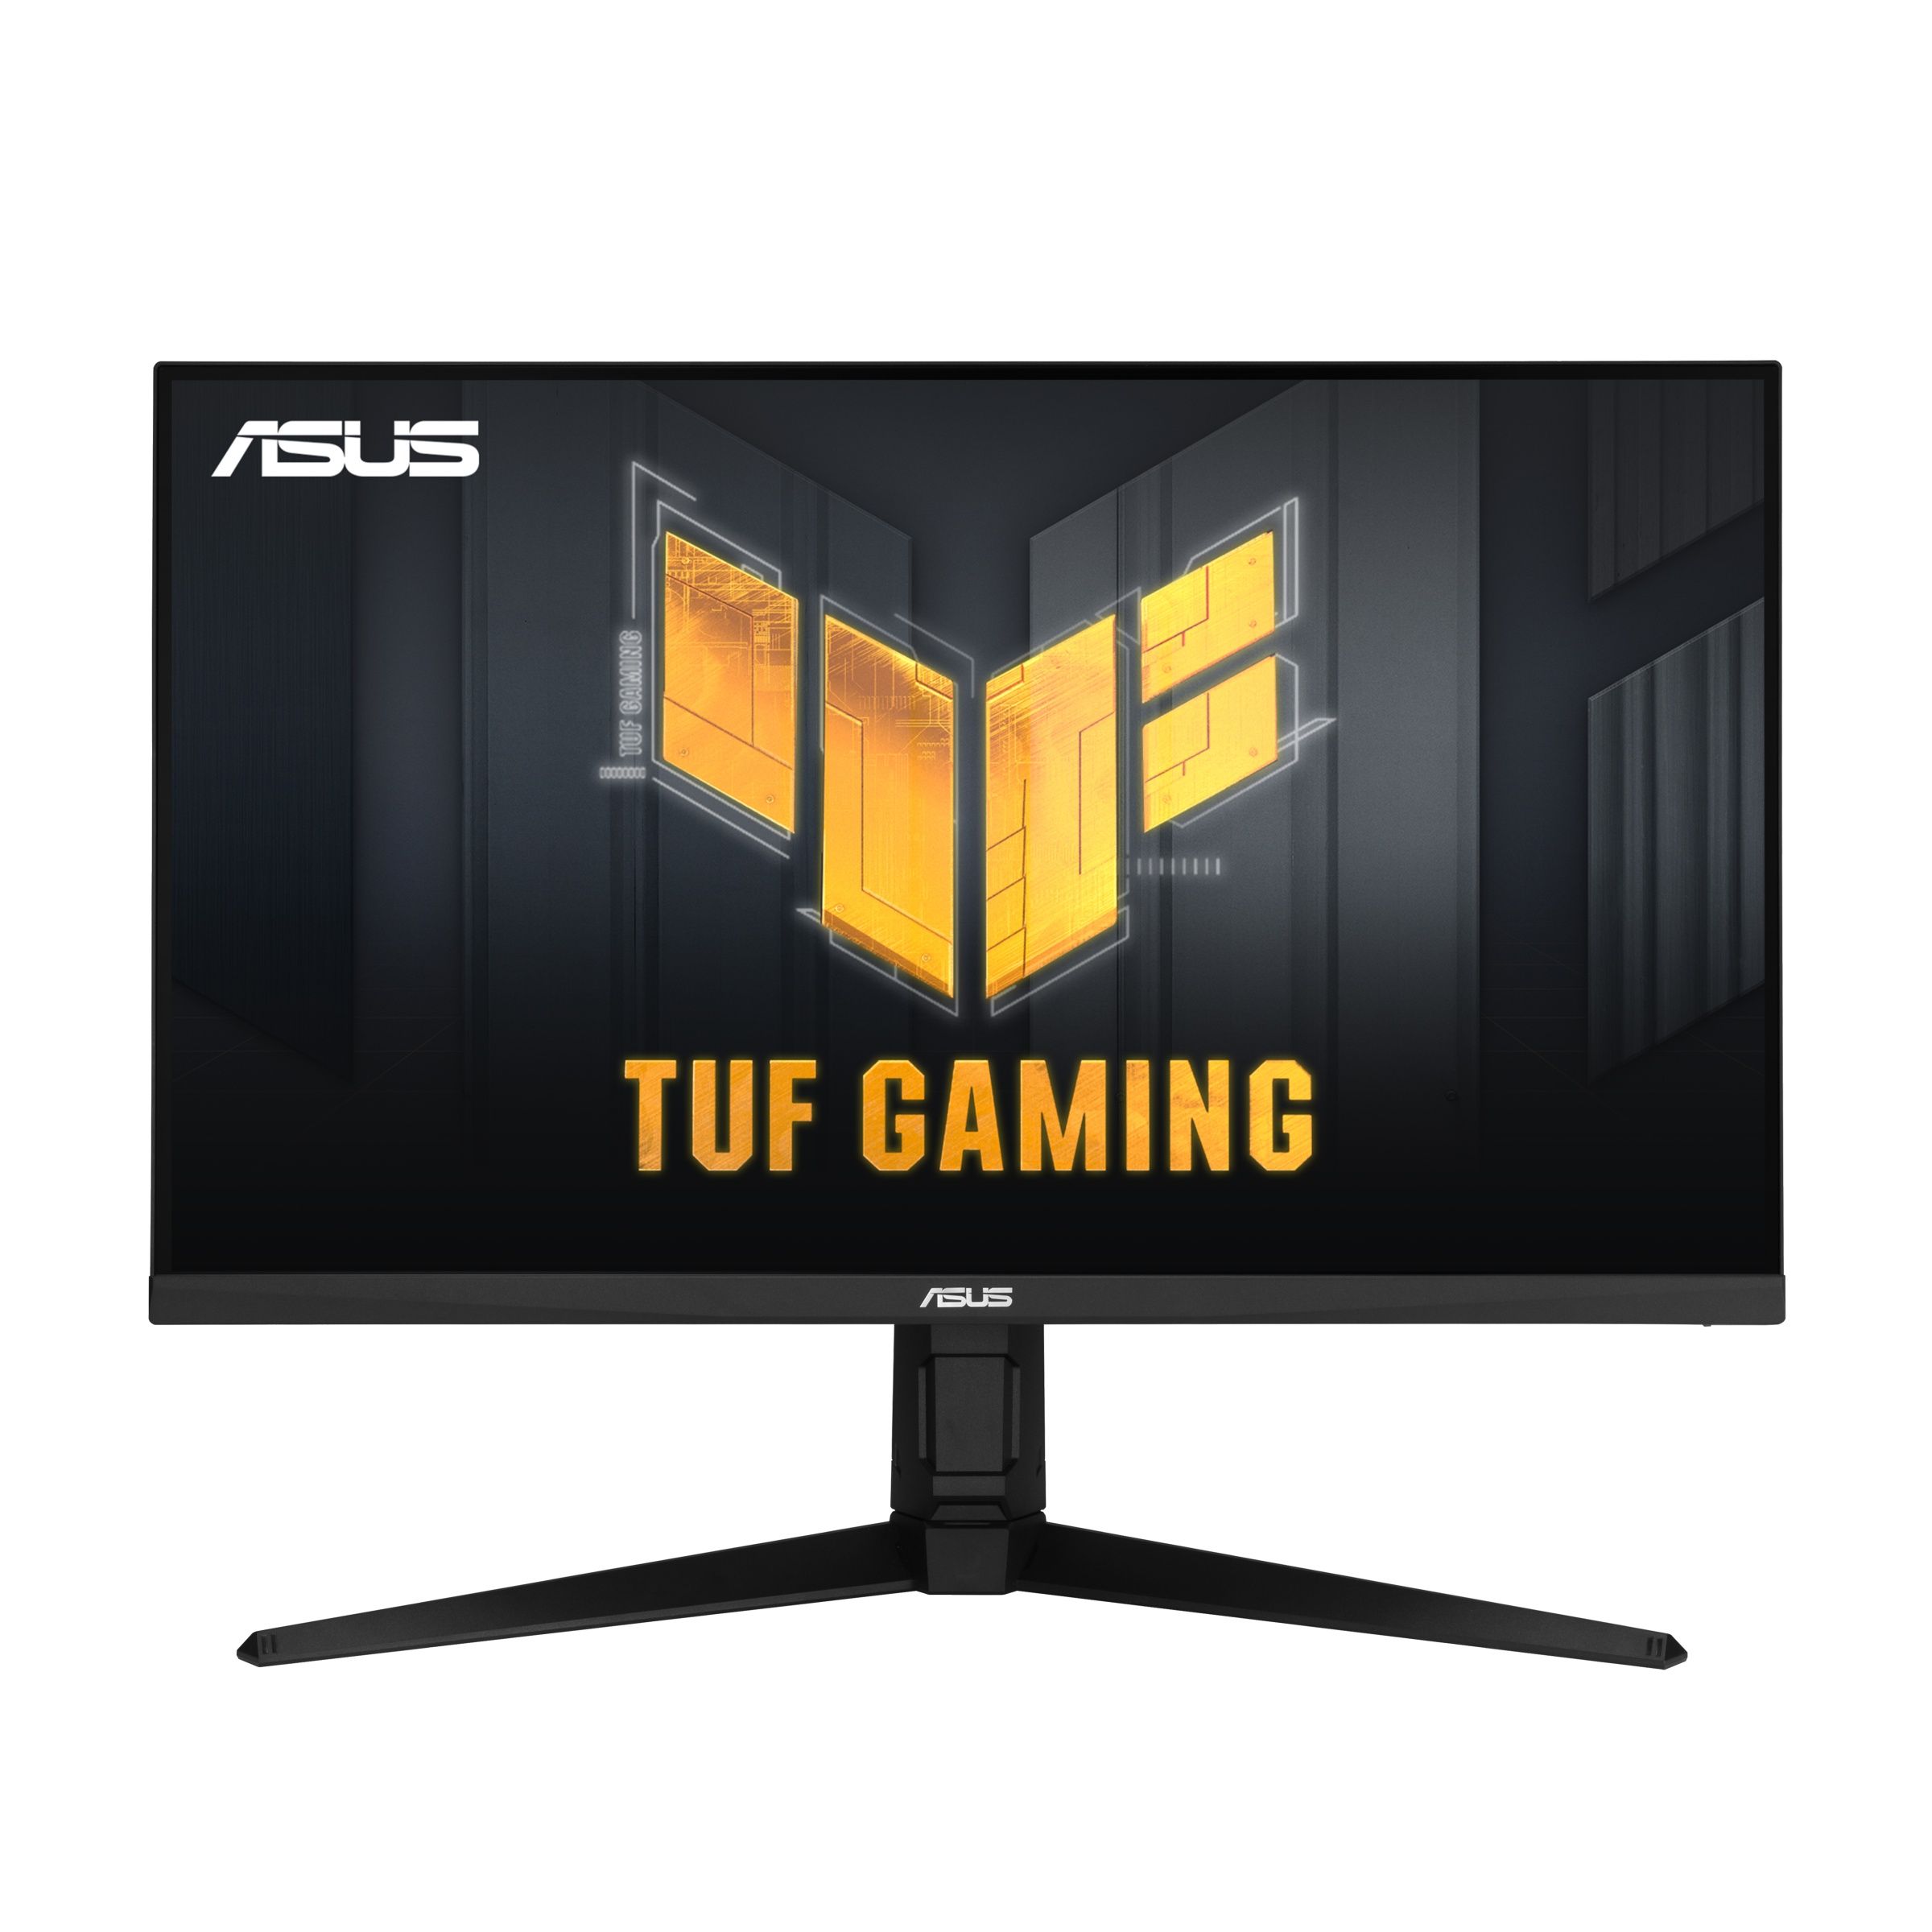 Immagine pubblicata in relazione al seguente contenuto: ASUS introduce il monitor TUF Gaming VG32AQL1A con pannello IPS QHD da 1ms | Nome immagine: news32277_ASUS-TUF-Gaming-VG32AQL1A_1.png